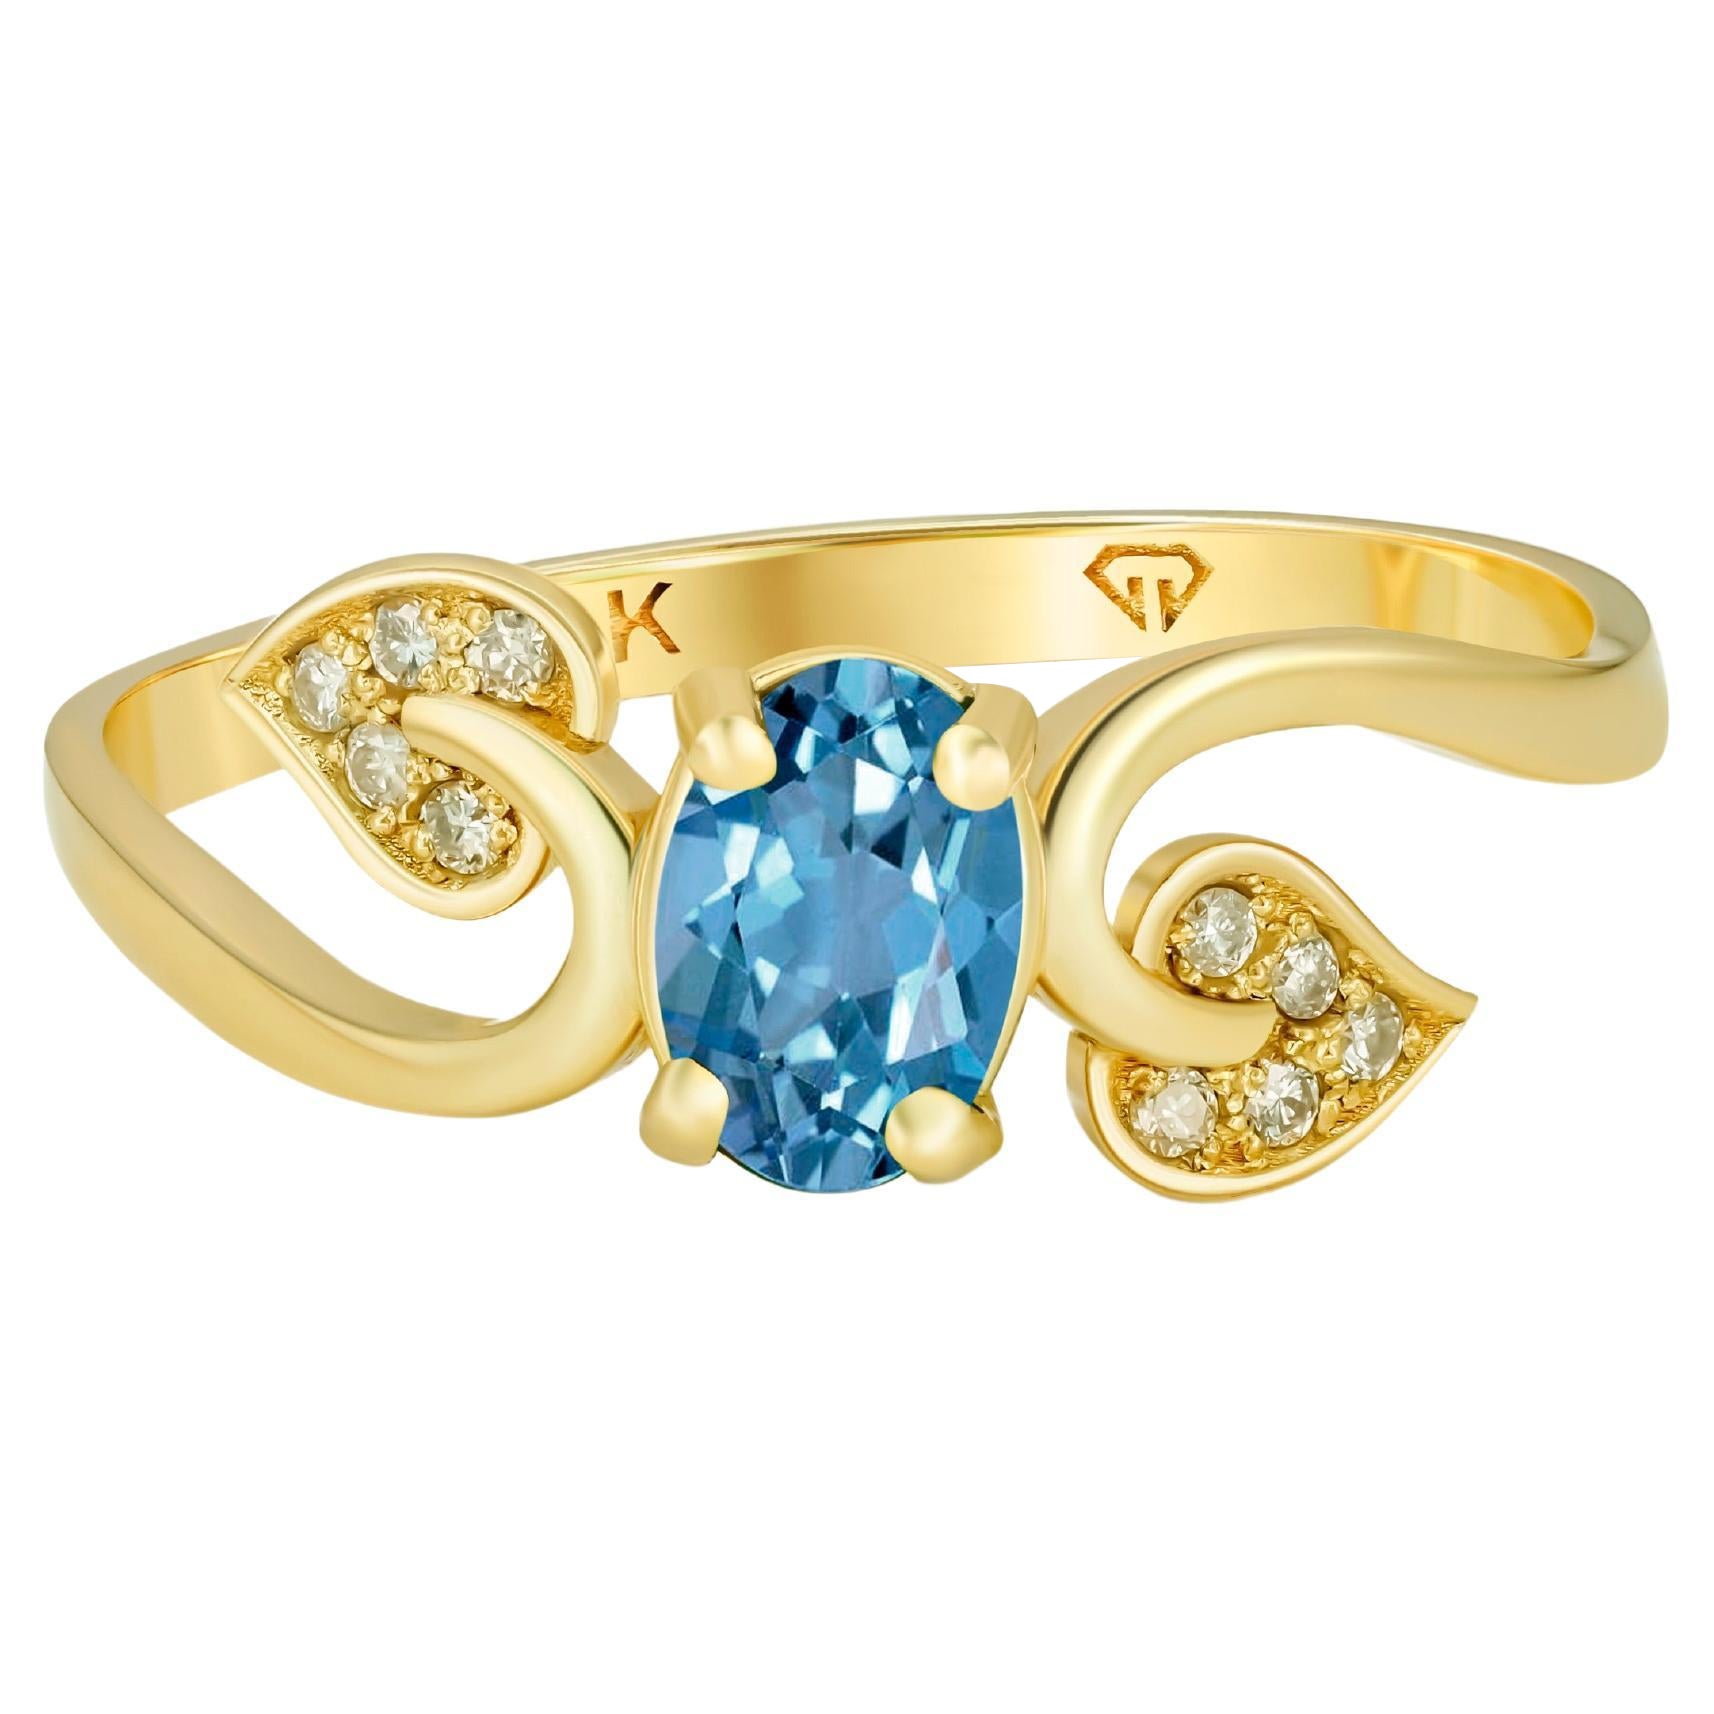 Sky Blue Topaz Ring, Genuine Topaz 14k Gold Ring, Topaz Engagement Ring